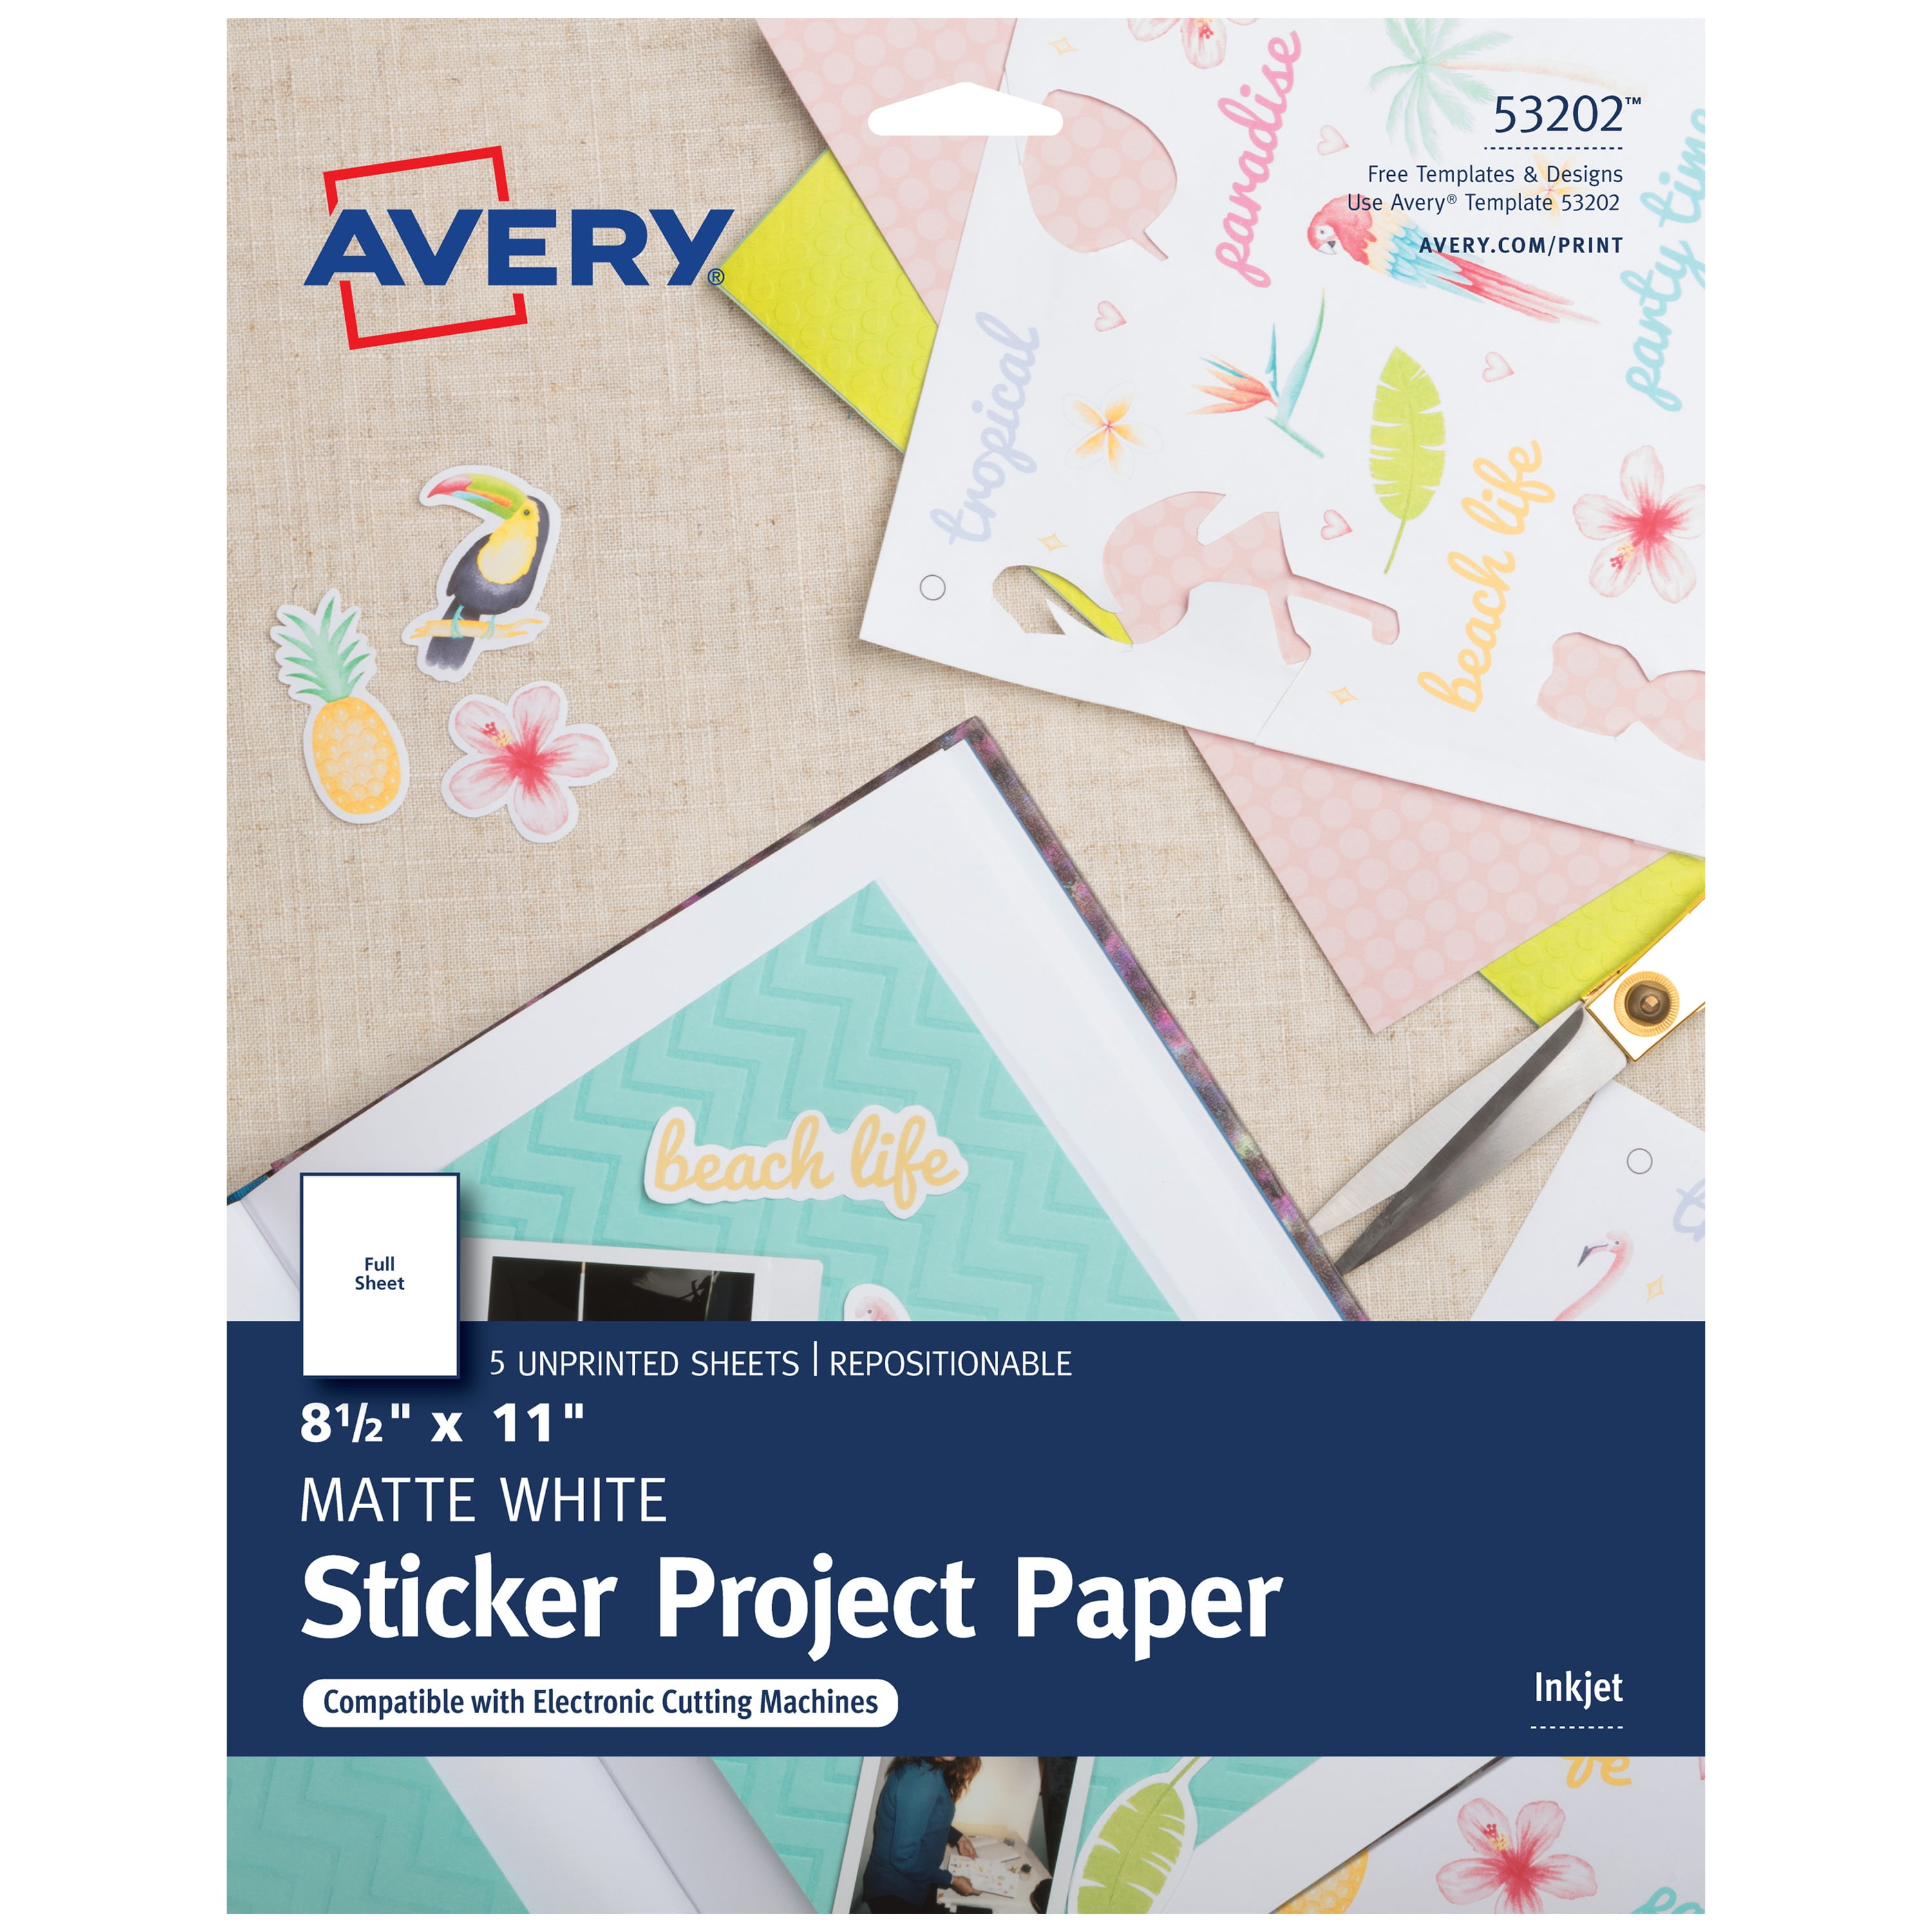 Avery Printable Sticker Paper, Matte White, Inkjet, 5 Sheets (53202